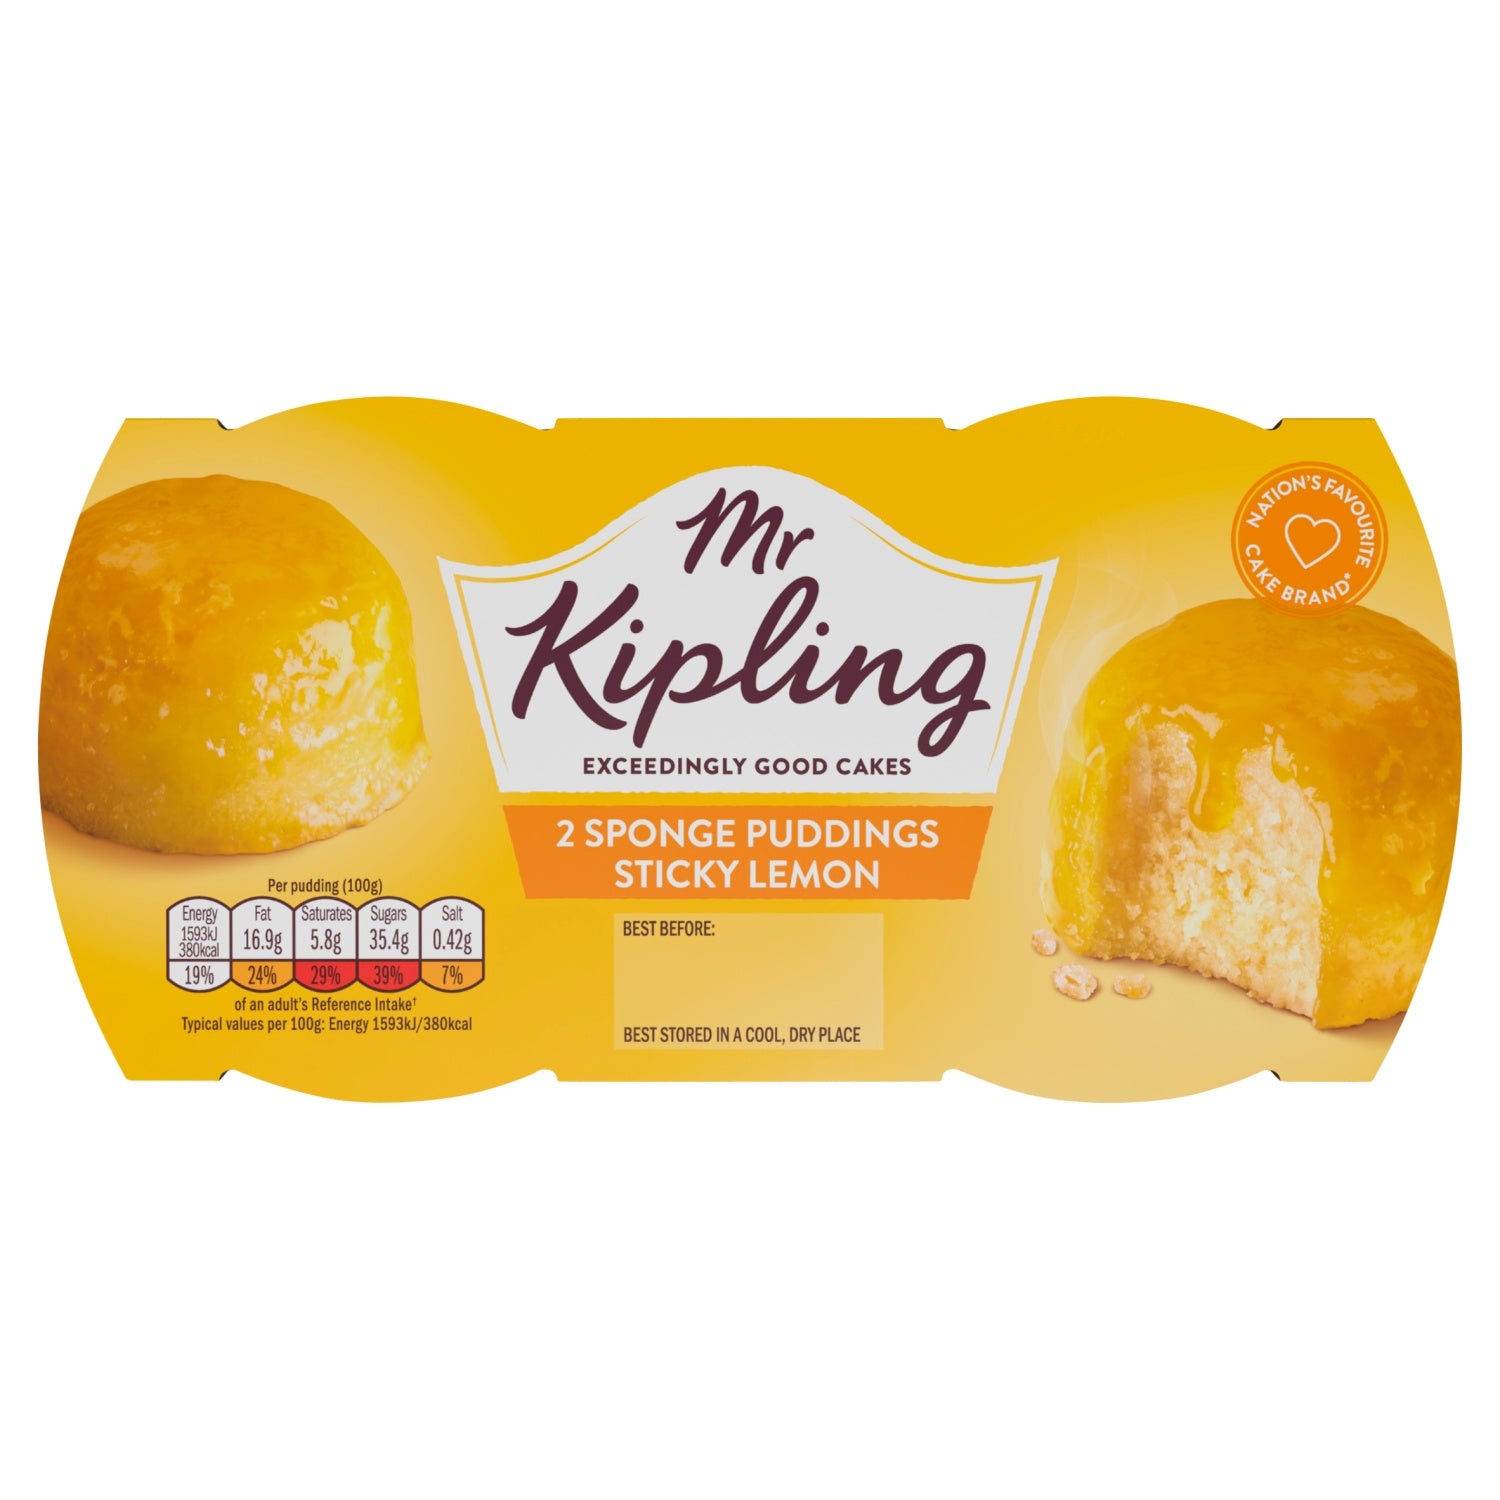 Mr Kipling 2 Lemon Sponge Puddings 2 x 95g